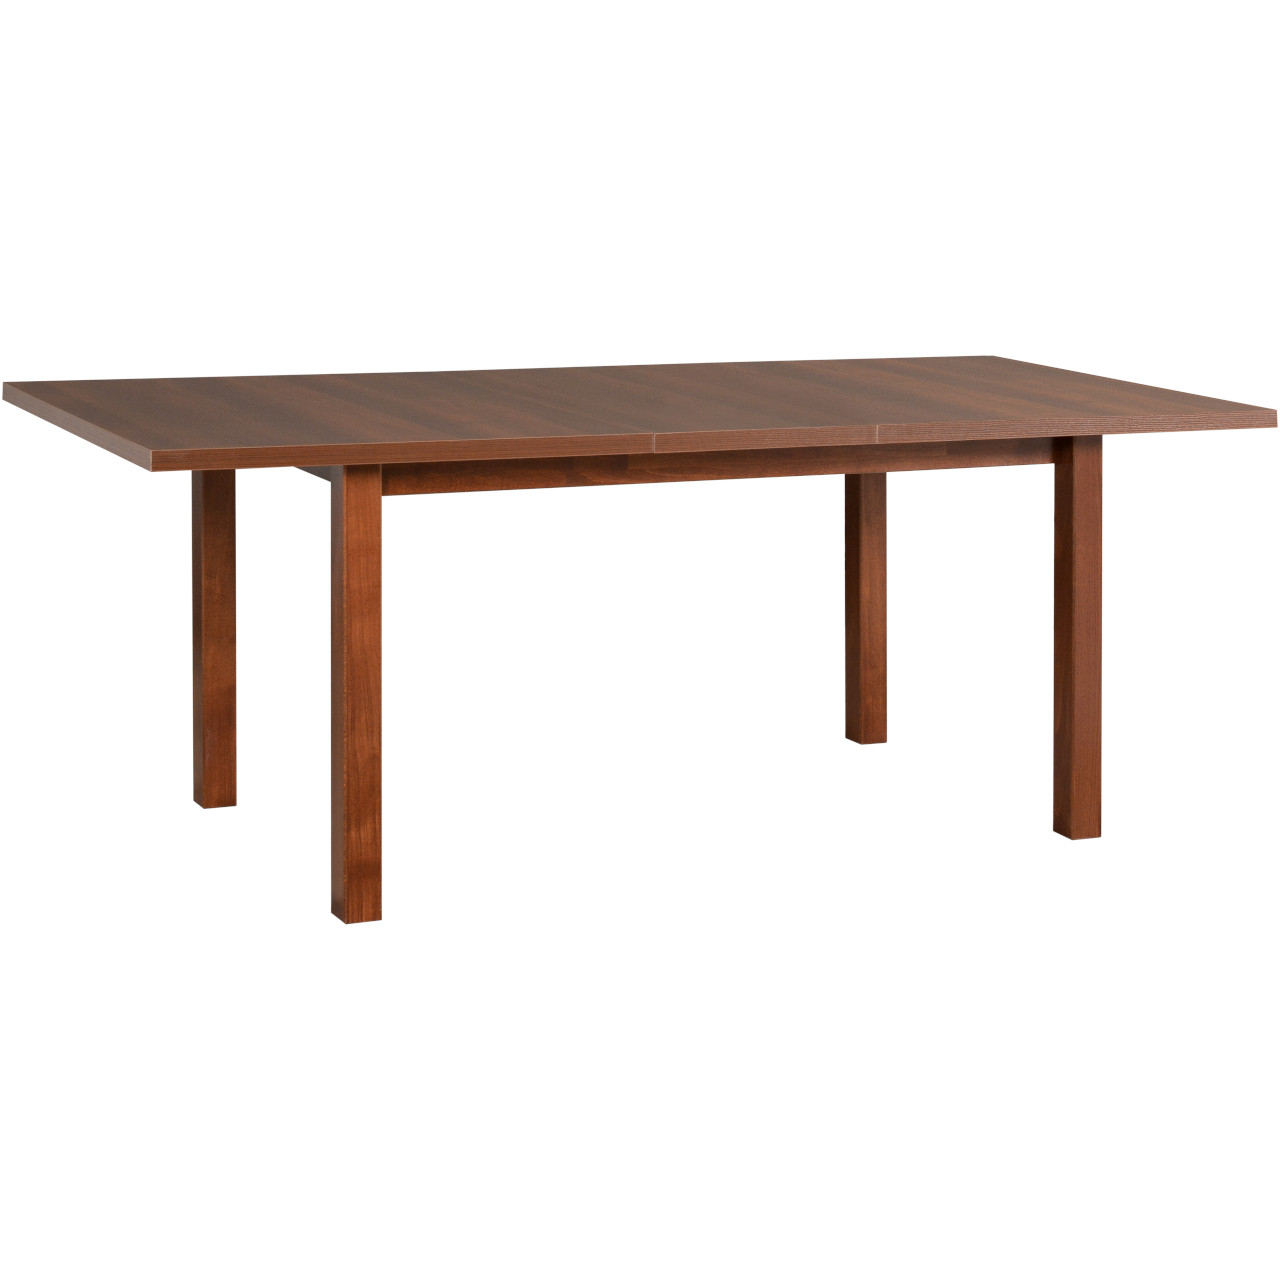 Table MODENA 2 92x160/200 walnut laminate